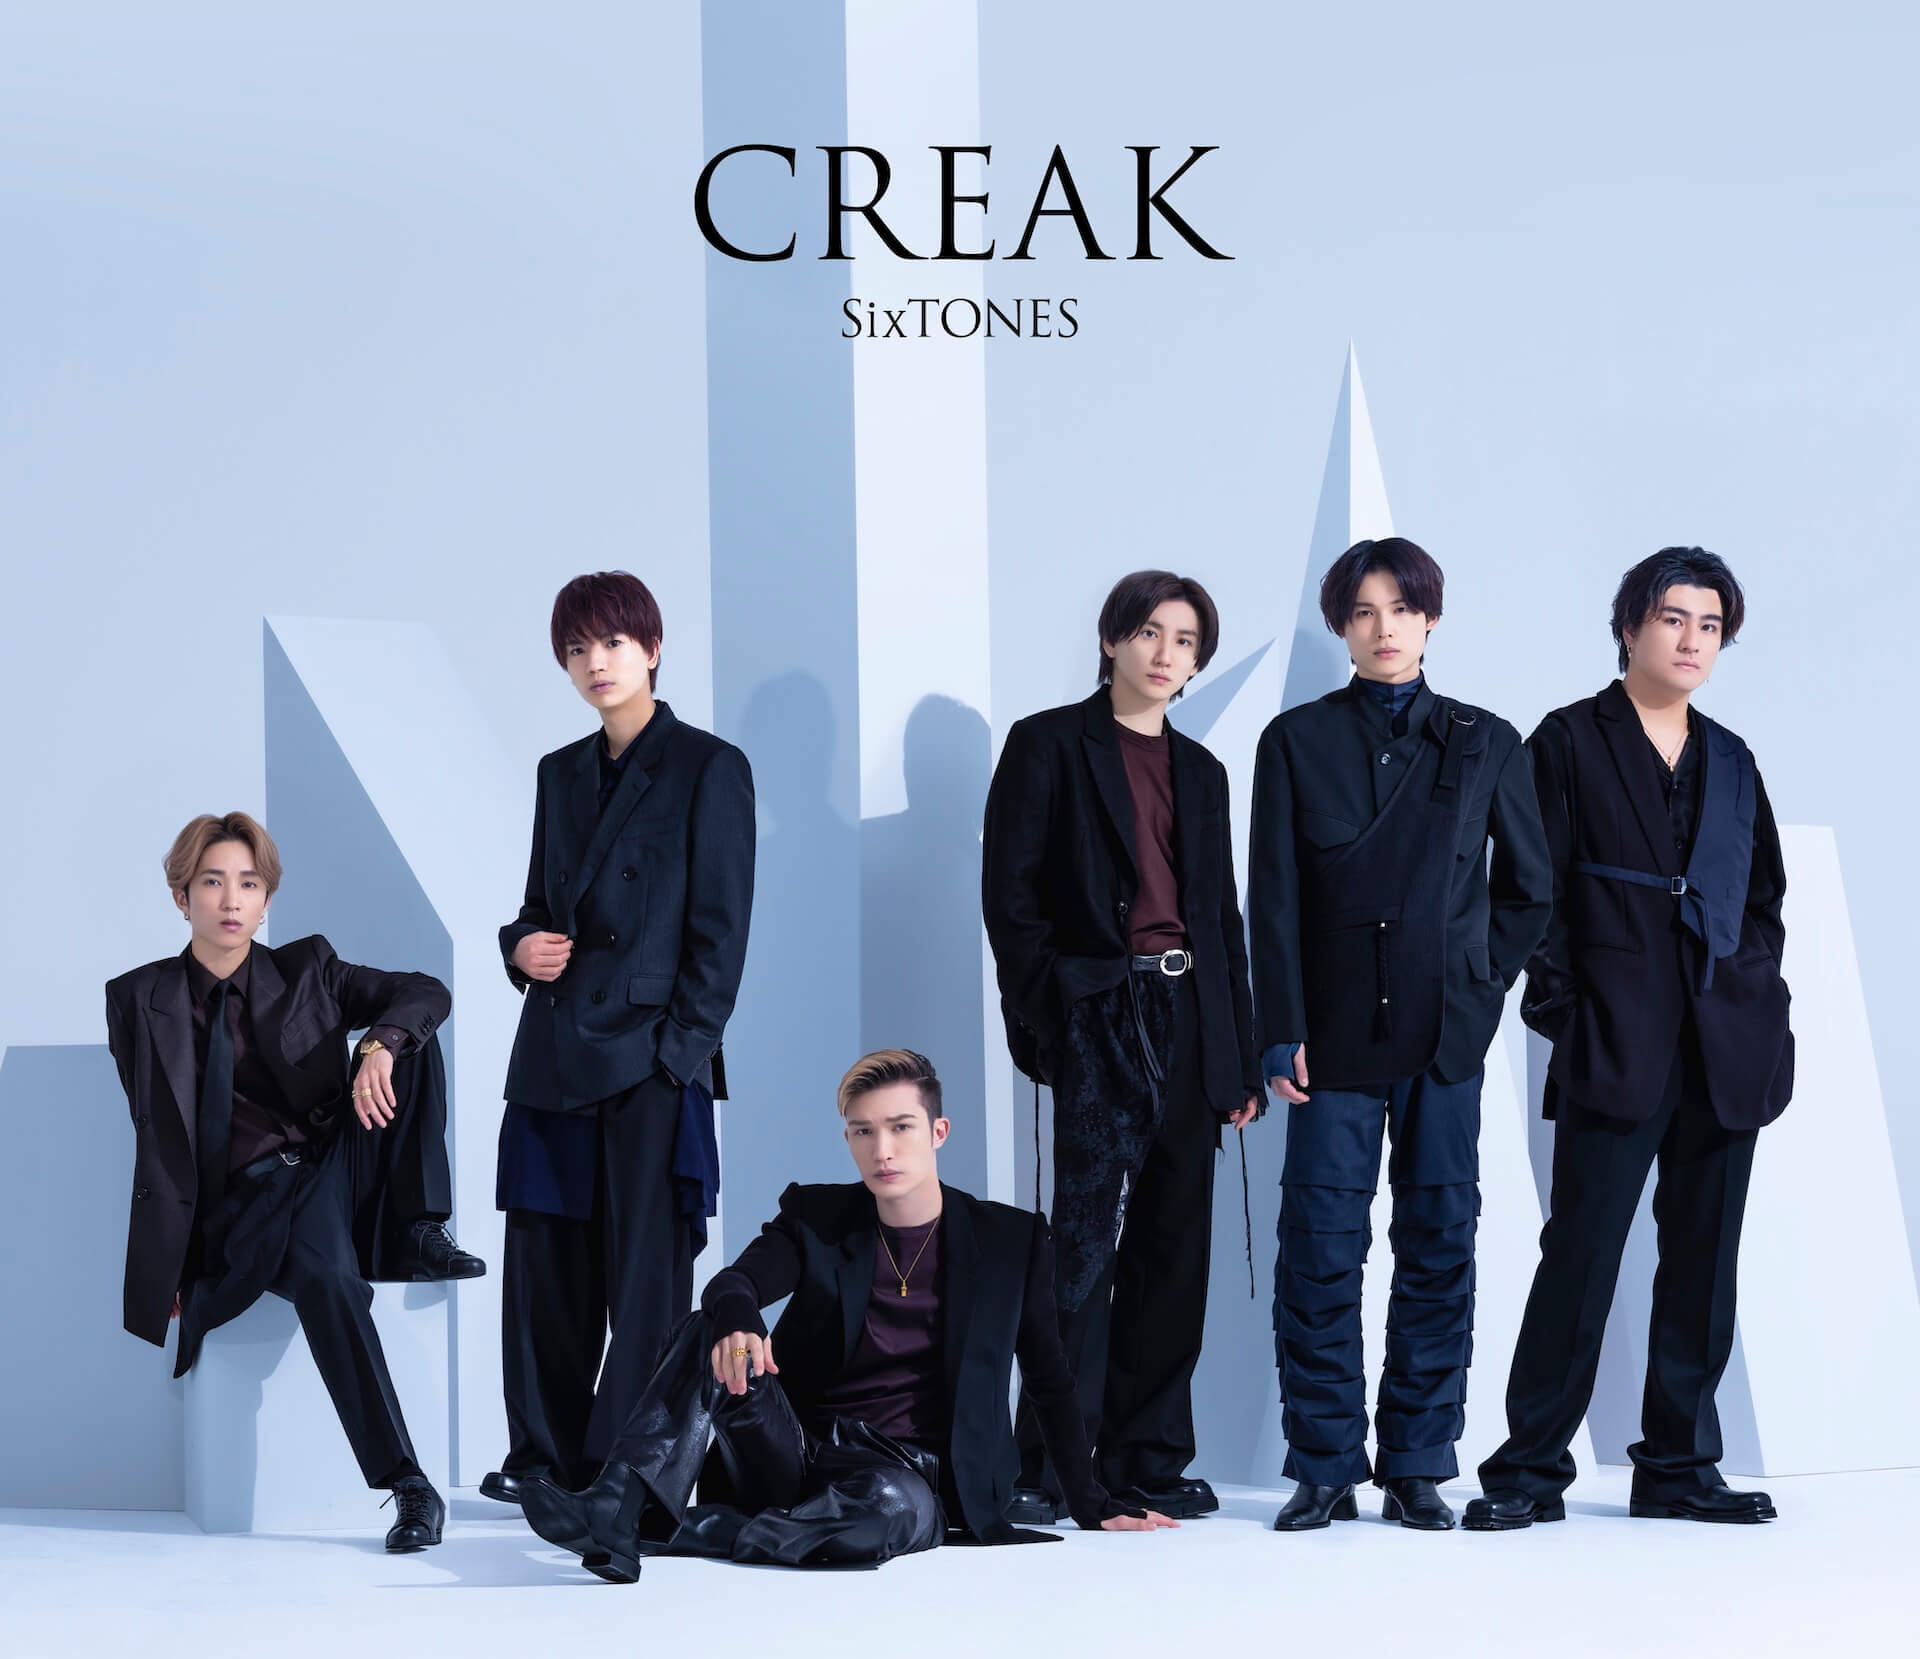 【レビュー】SixTONES 、11thシングル『CREAK』メンバーソロ楽曲を全曲視聴 column230820_sixtones-creak-01